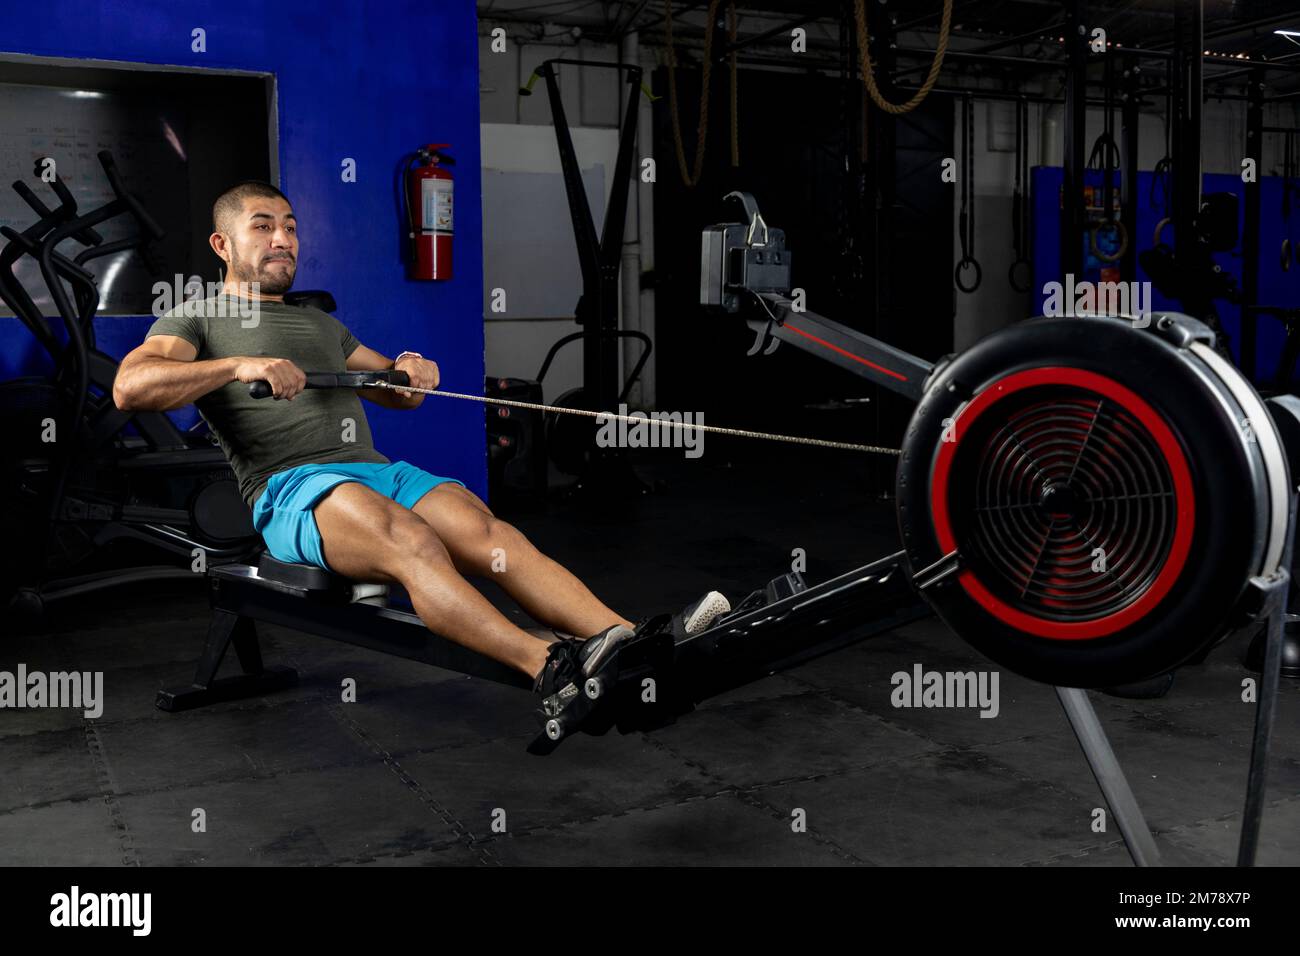 Seitenansicht eines Lateiners mit Sportbekleidung, der in einem Crossfit-Fitnessstudio auf einer Maschine rudert Stockfoto